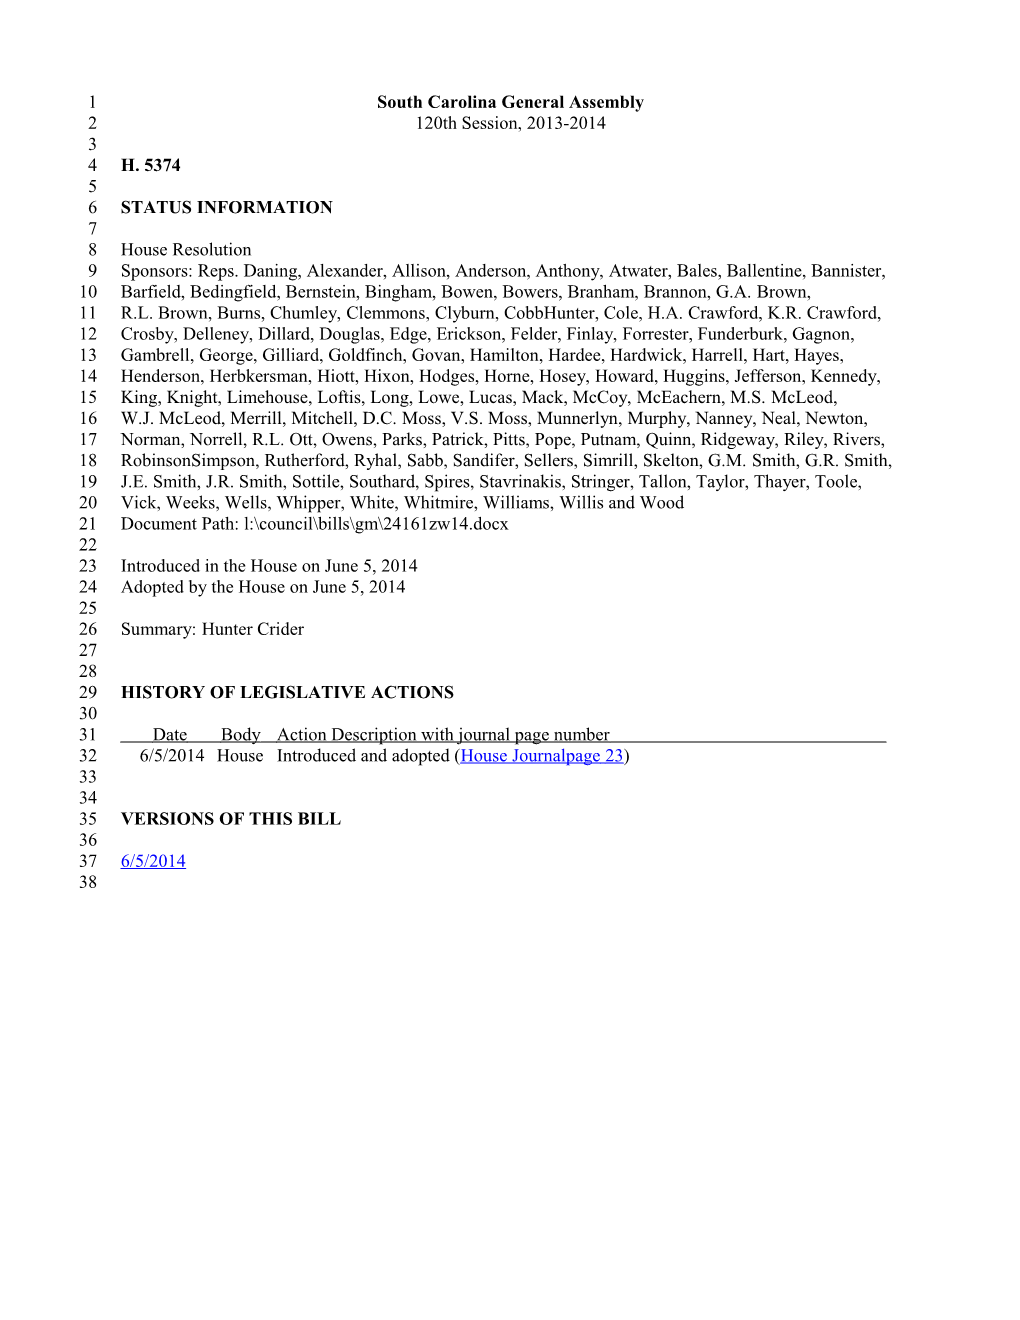 2013-2014 Bill 5374: Hunter Crider - South Carolina Legislature Online